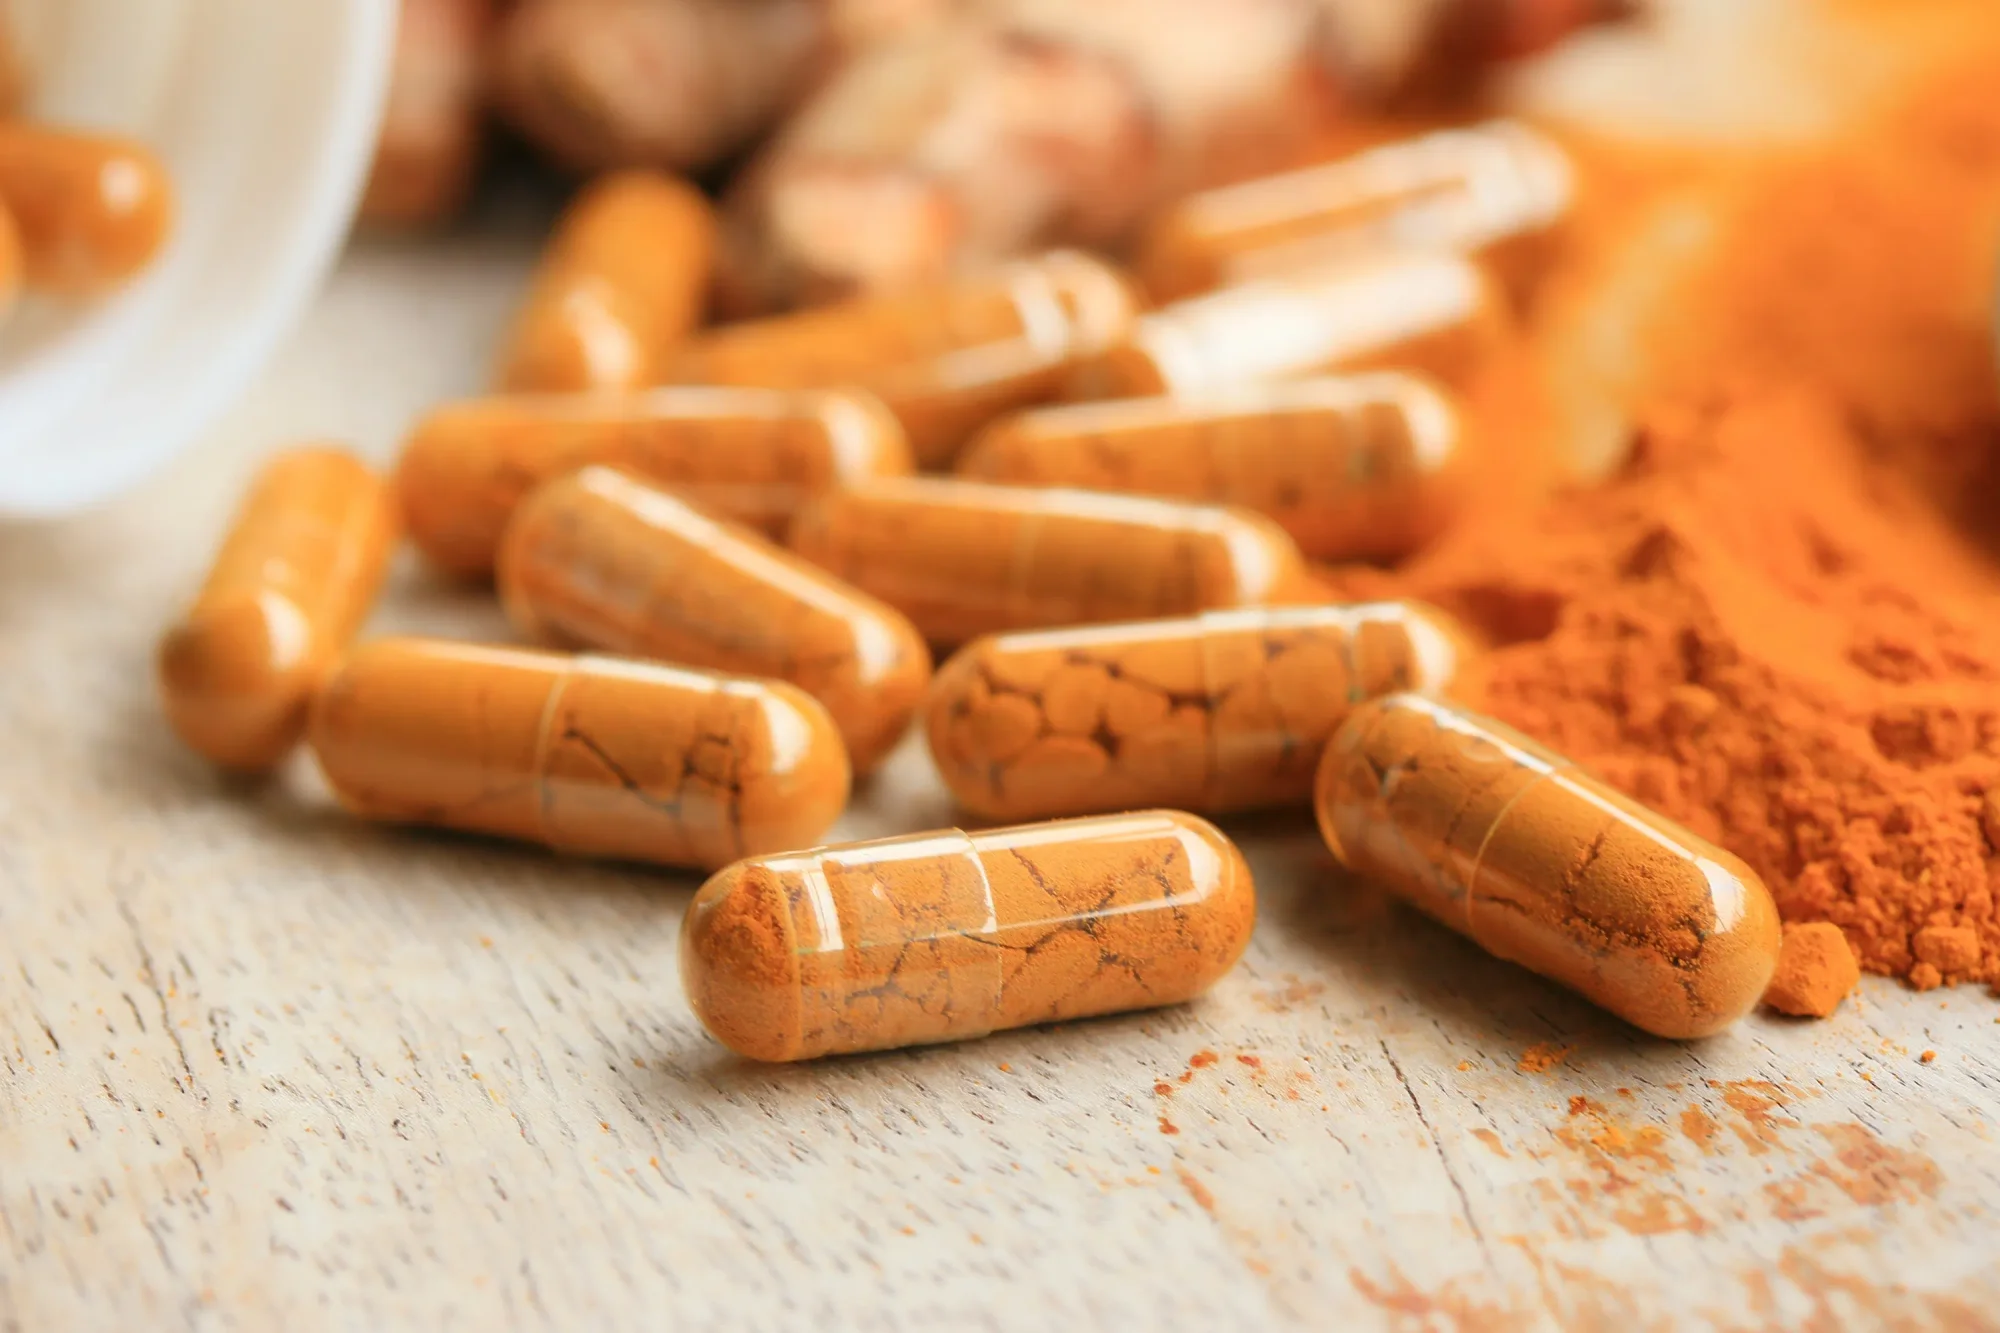 Orange turmeric capsules alongside turmeric powder.